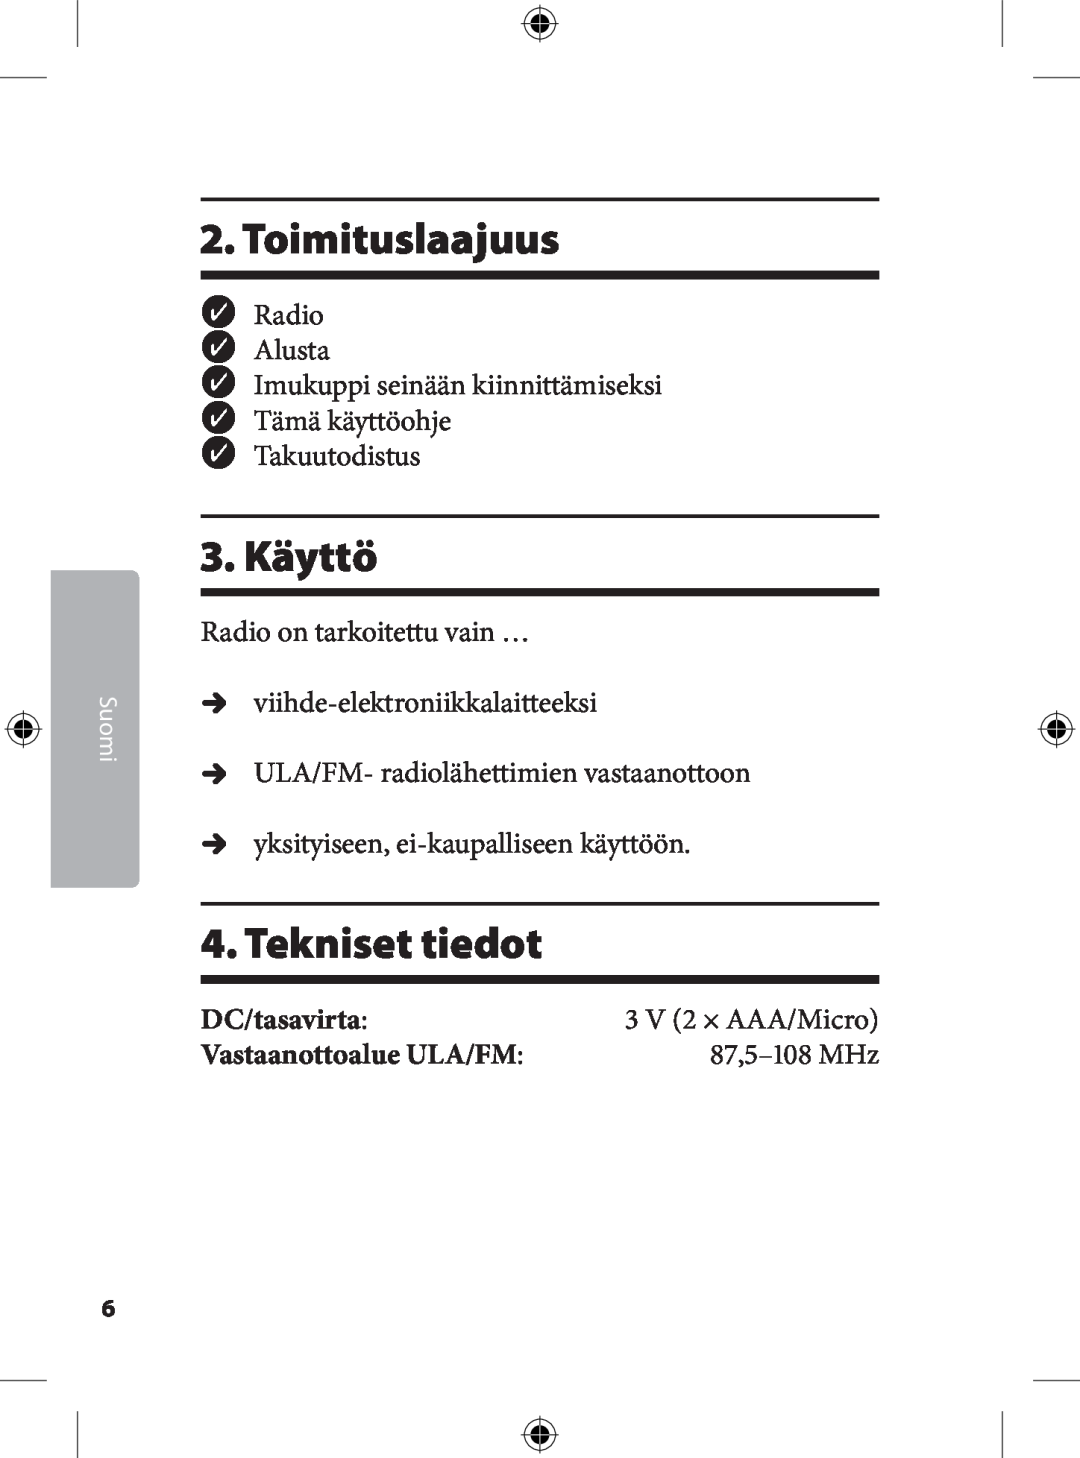 Kompernass KH 2246 manual . Toimituslaajuus, . Käyttö, . Tekniset tiedot, Suomi,  V  × AAA/Micro 